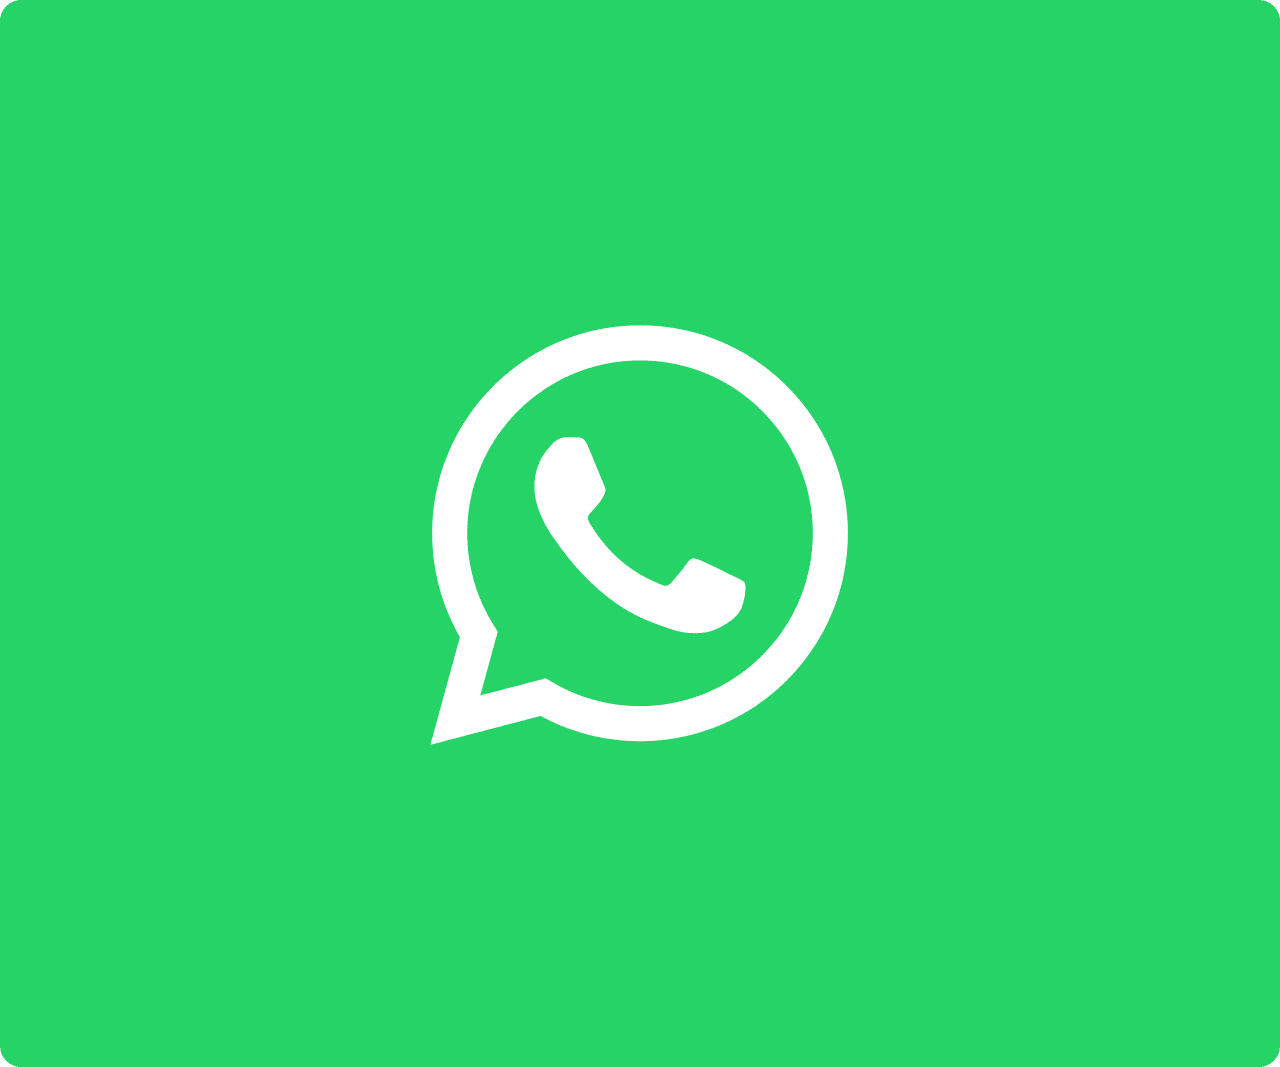 Reacciones y nueva burbuja de chat en WhatsApp 